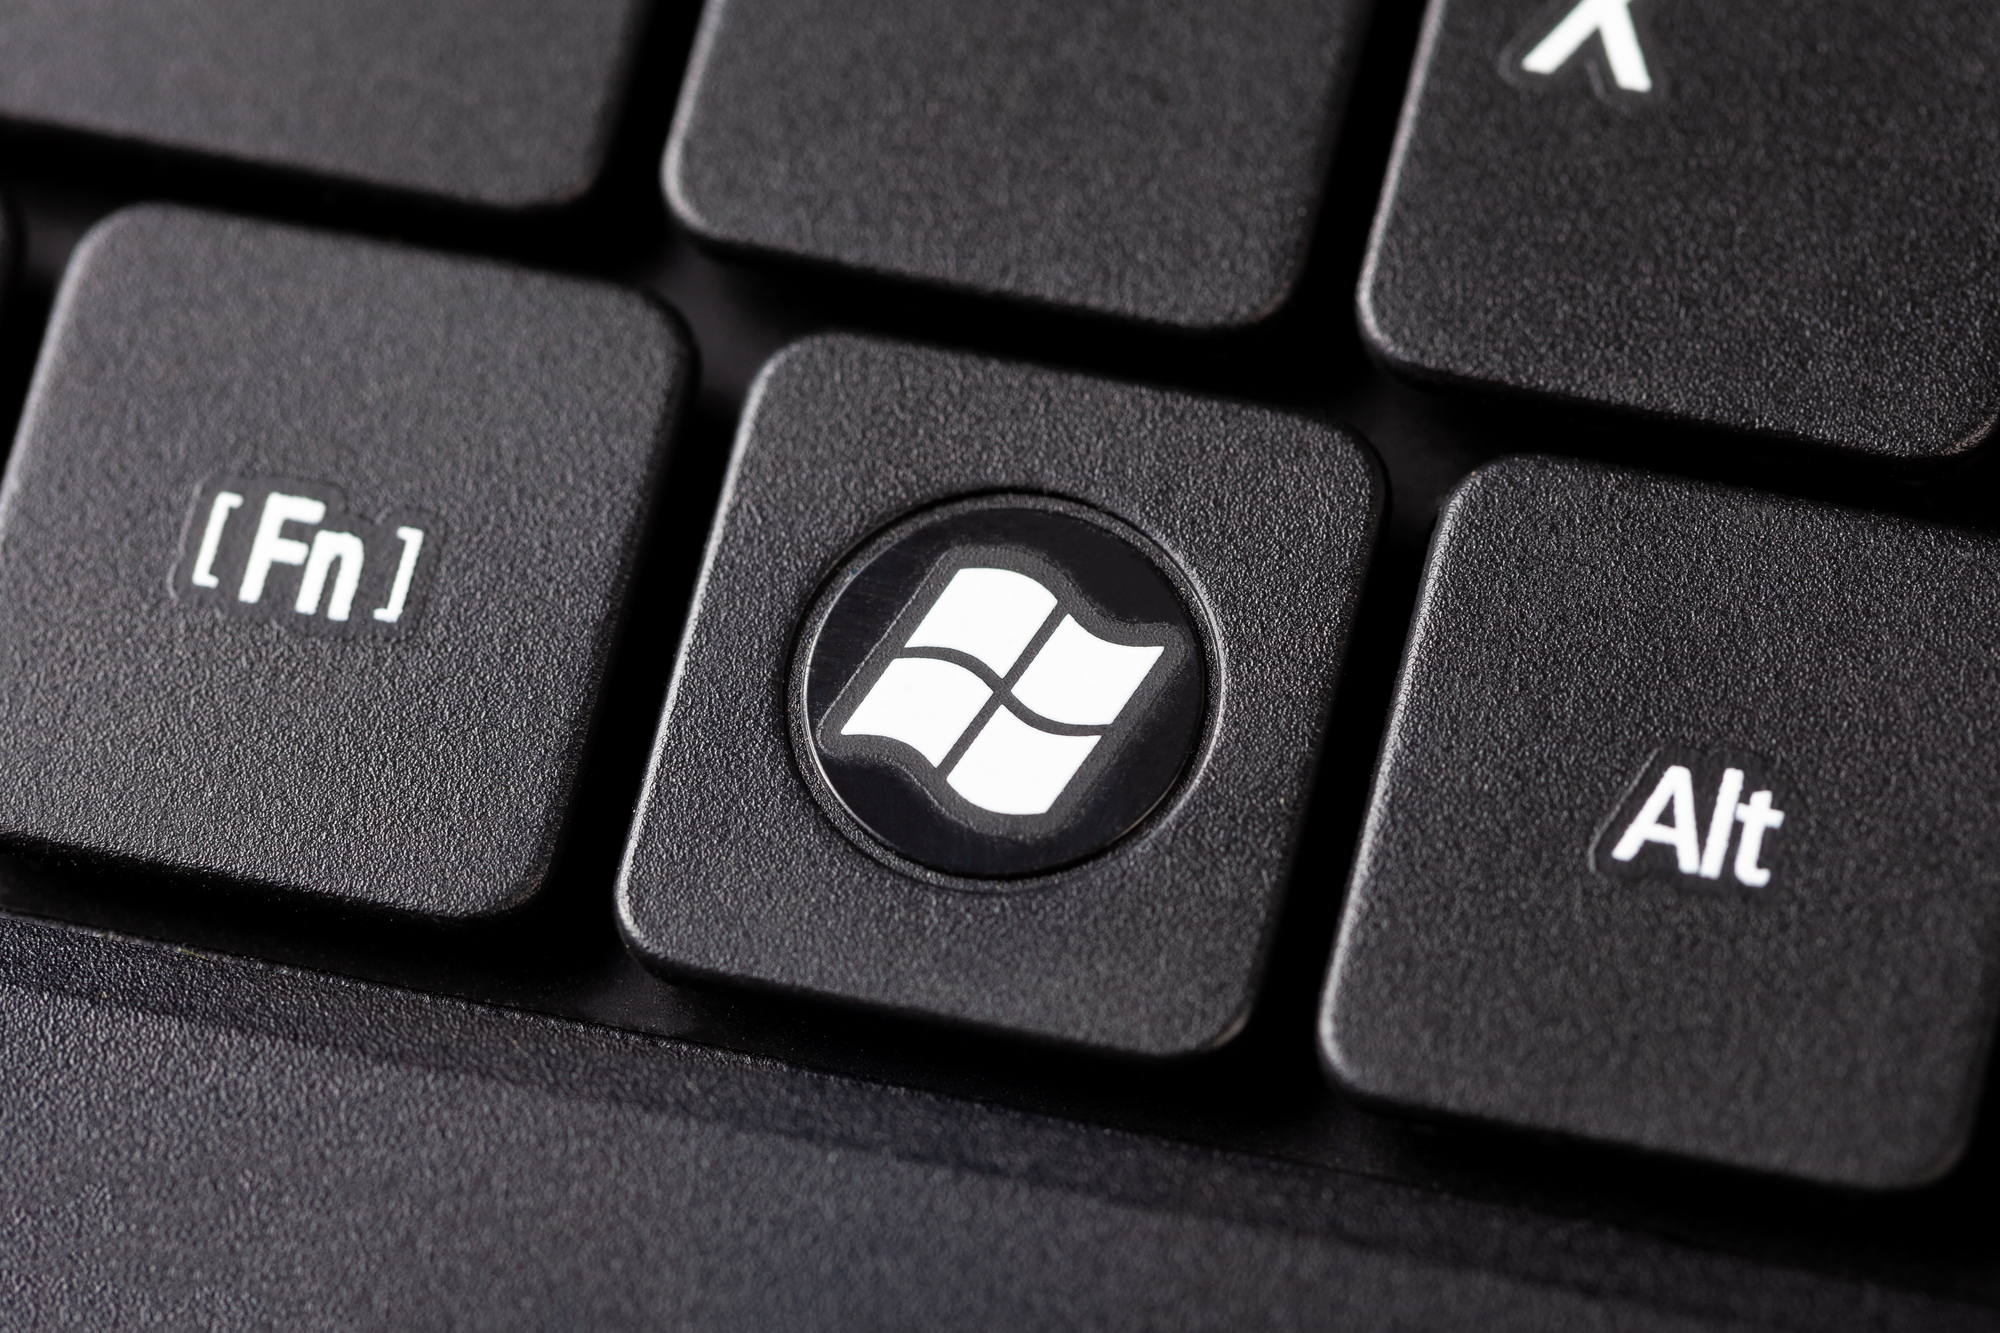 ¿Cómo se verá tu teclado?